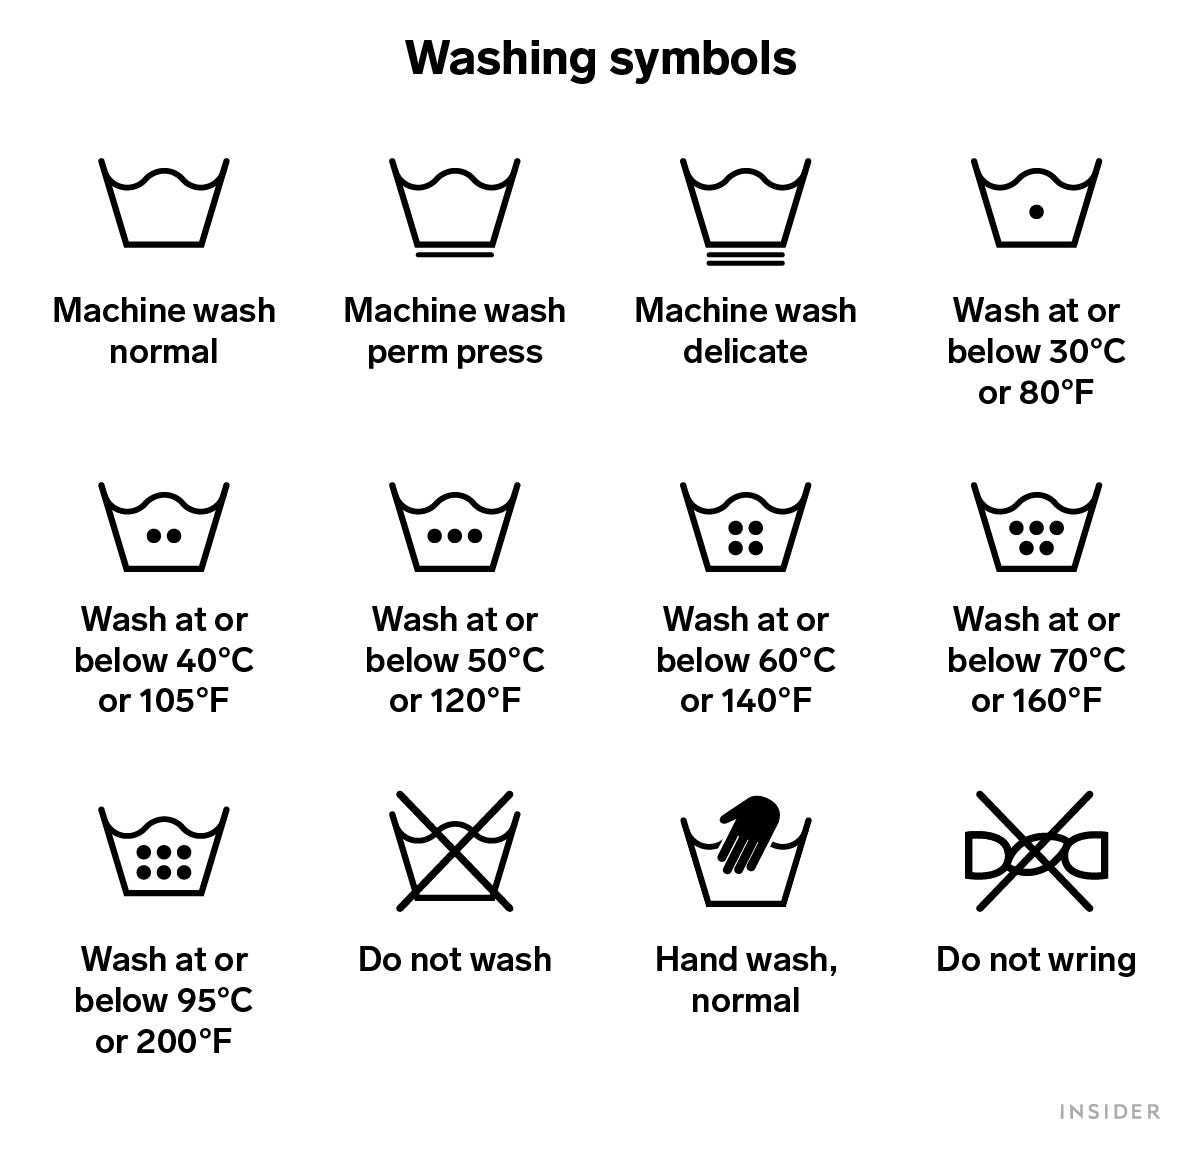 Illustration von Symbolen zum Waschen von Wäsche und deren Bedeutung.